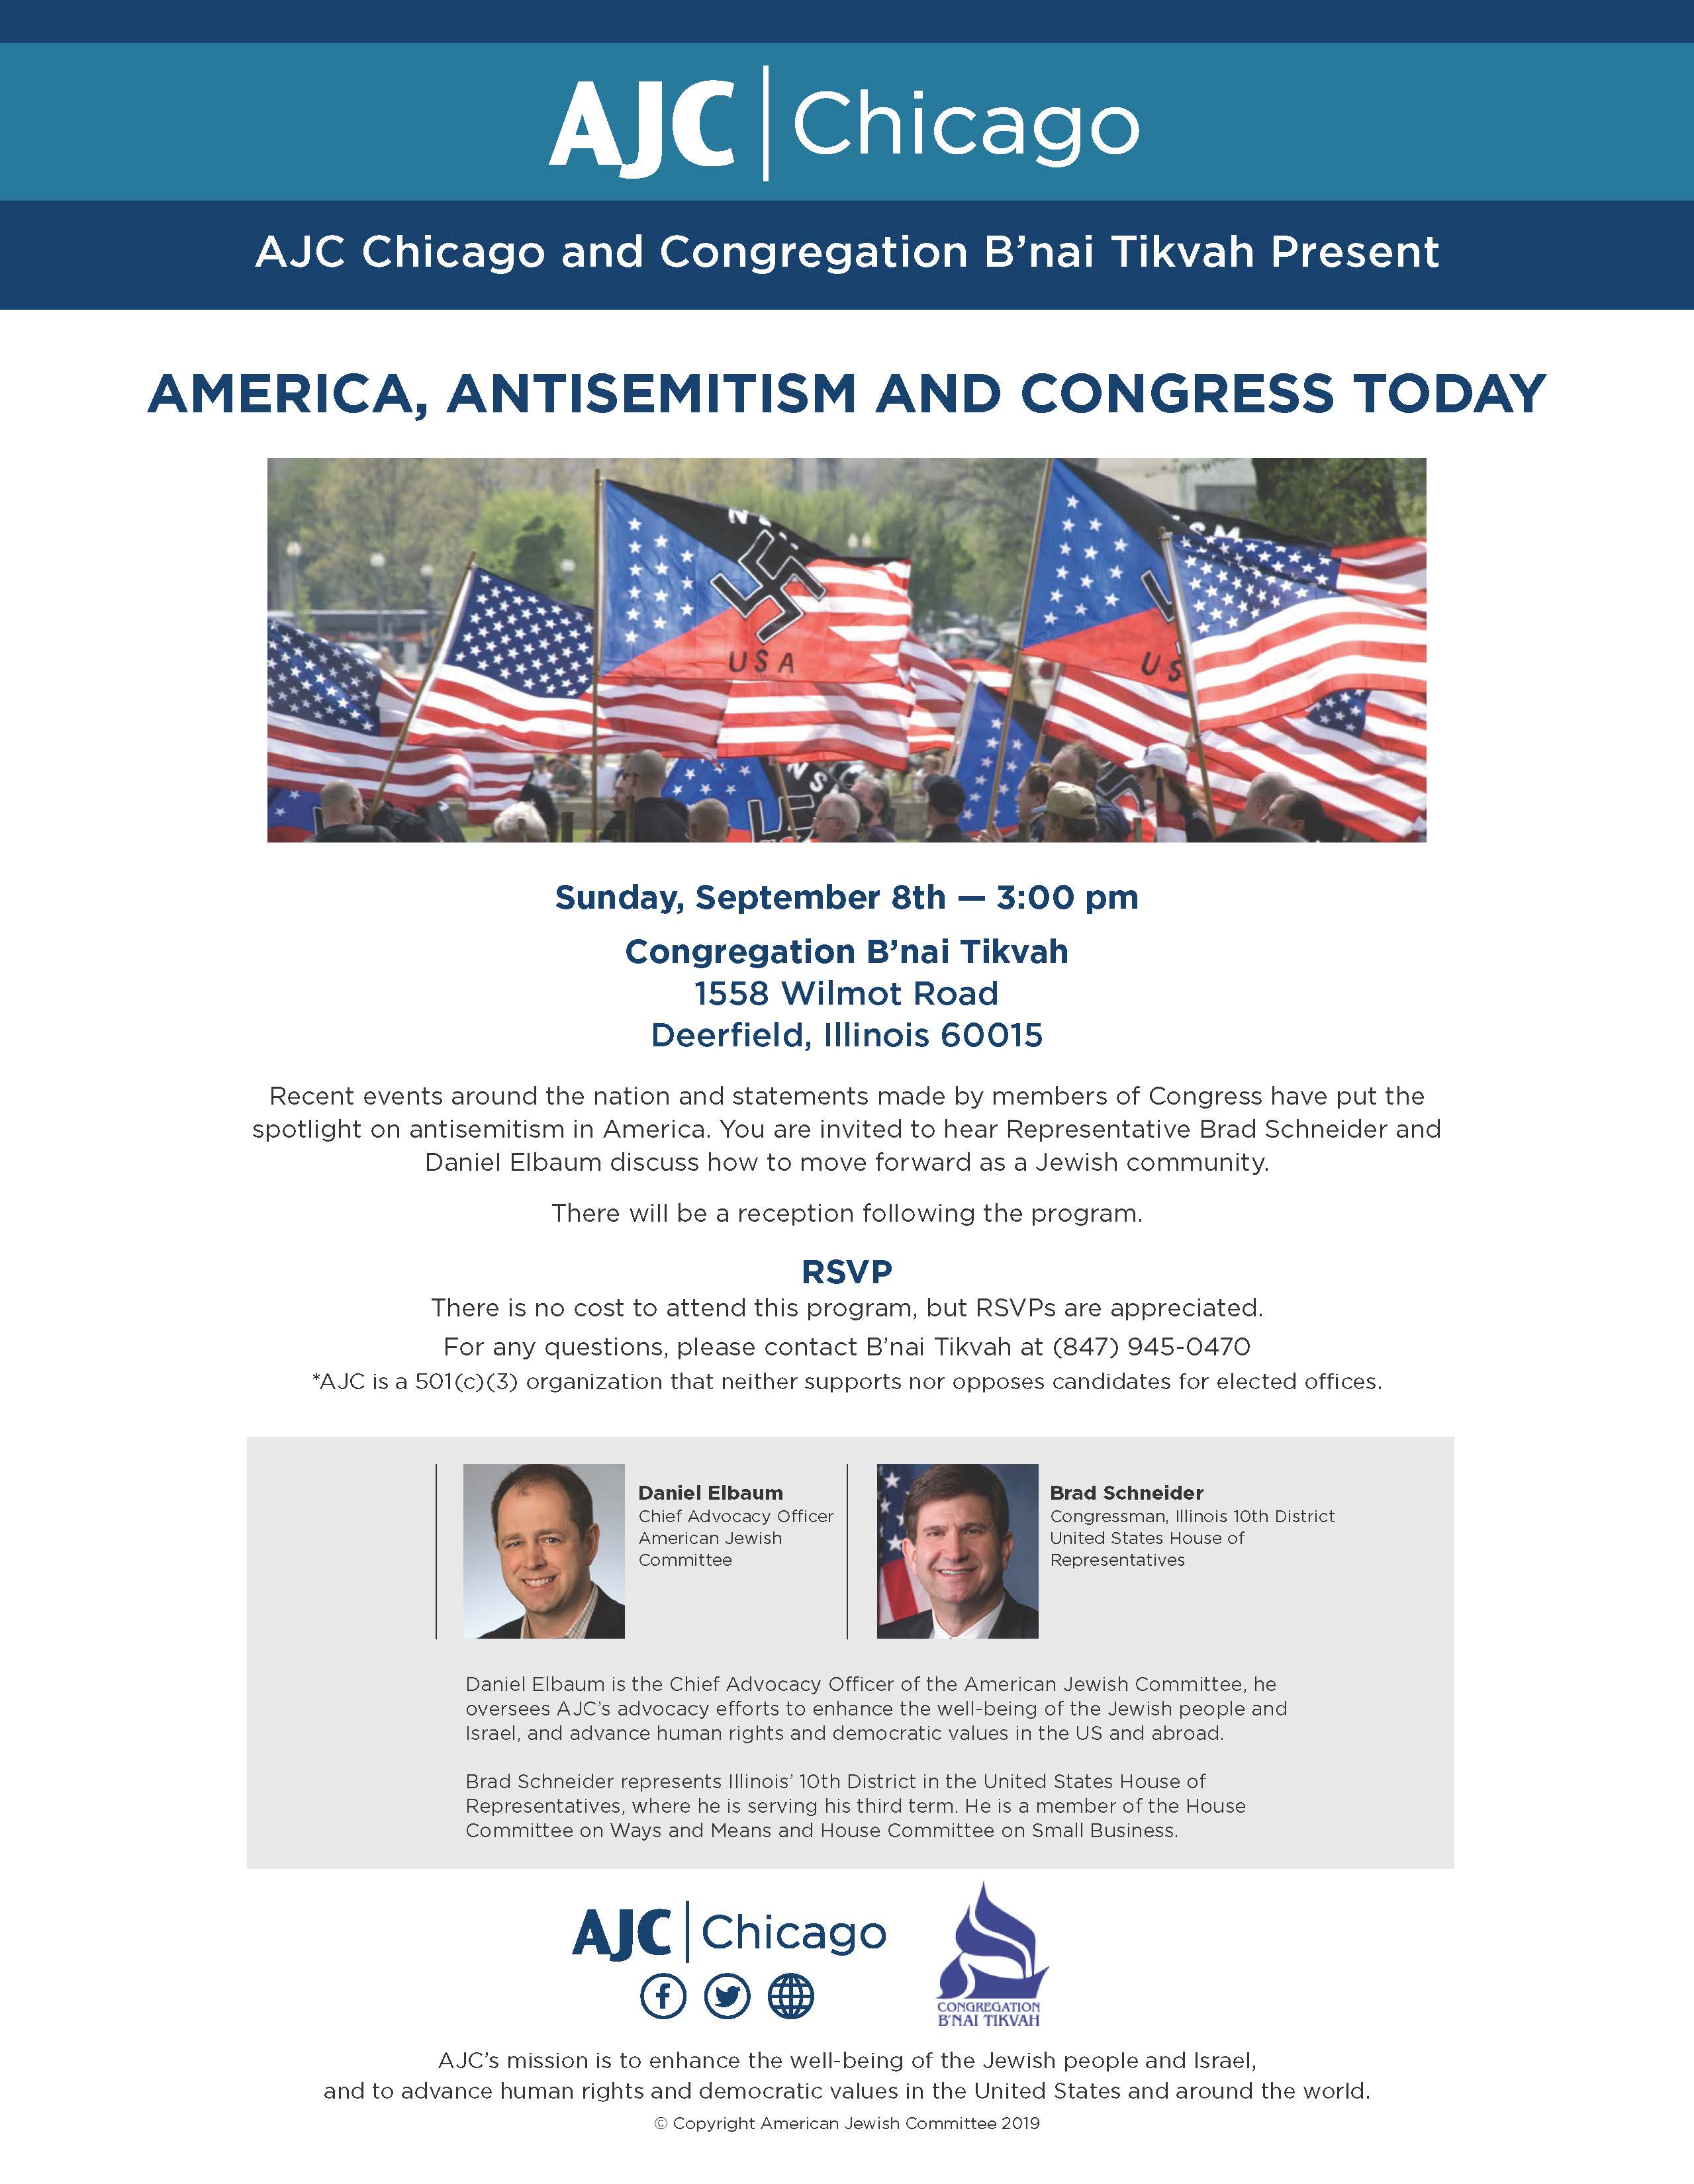 AJC Chicago Antisemitism Program